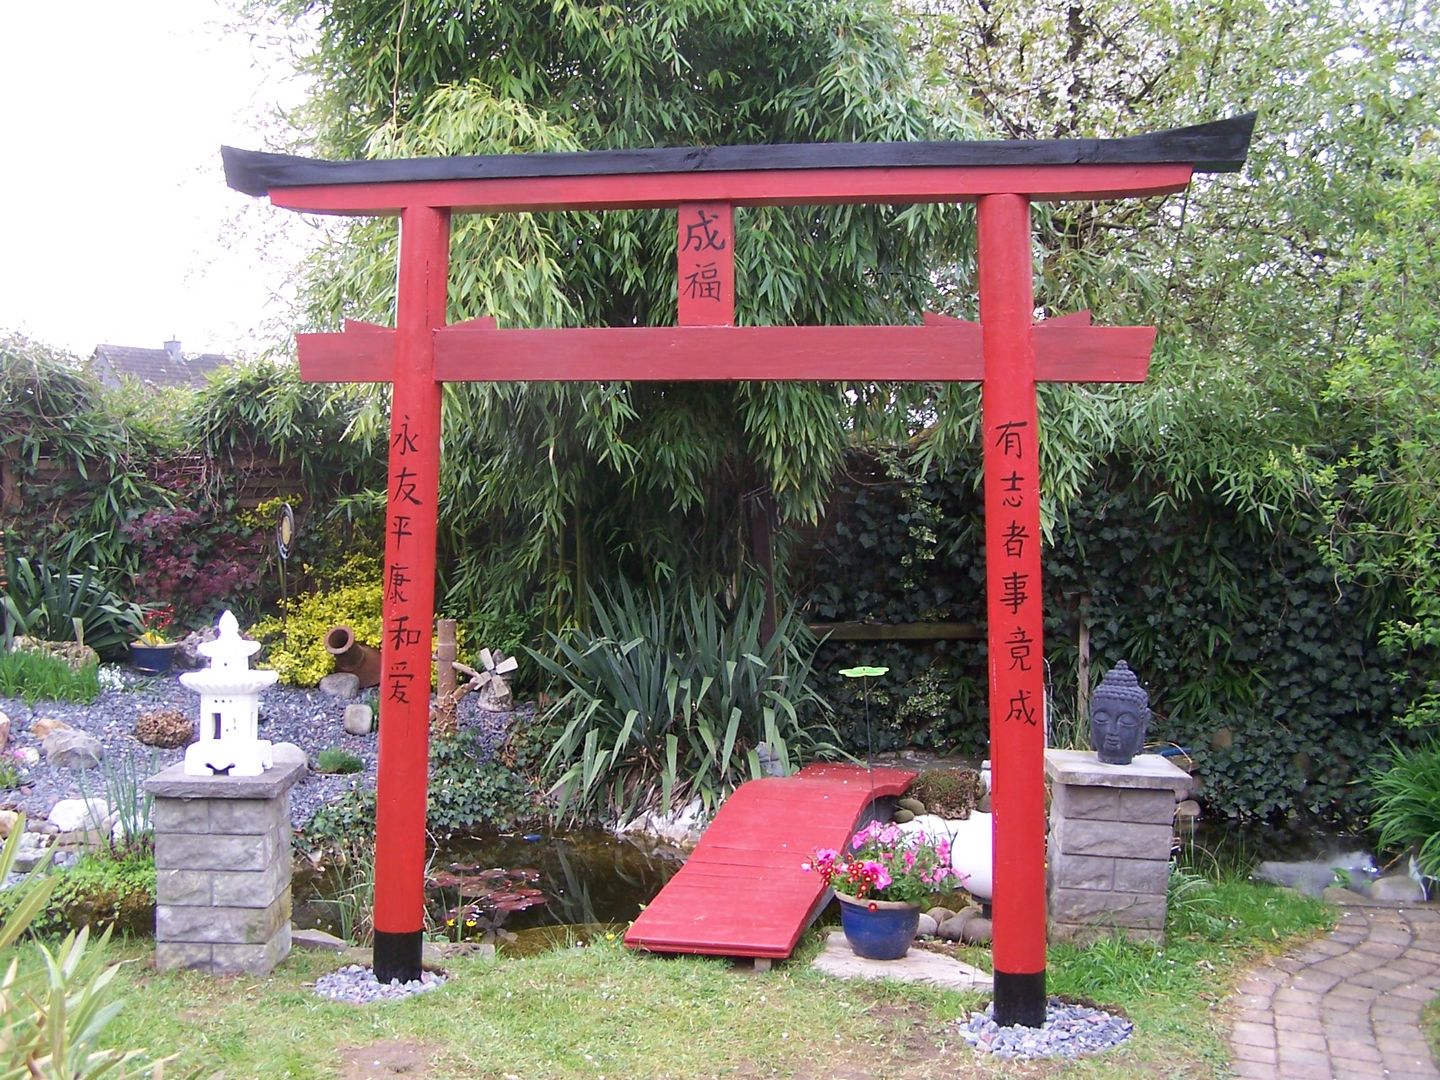 Bau eines Japanischen Torii, Waldeck-Upcycling-Products Waldeck-Upcycling-Products Сад в азиатском стиле